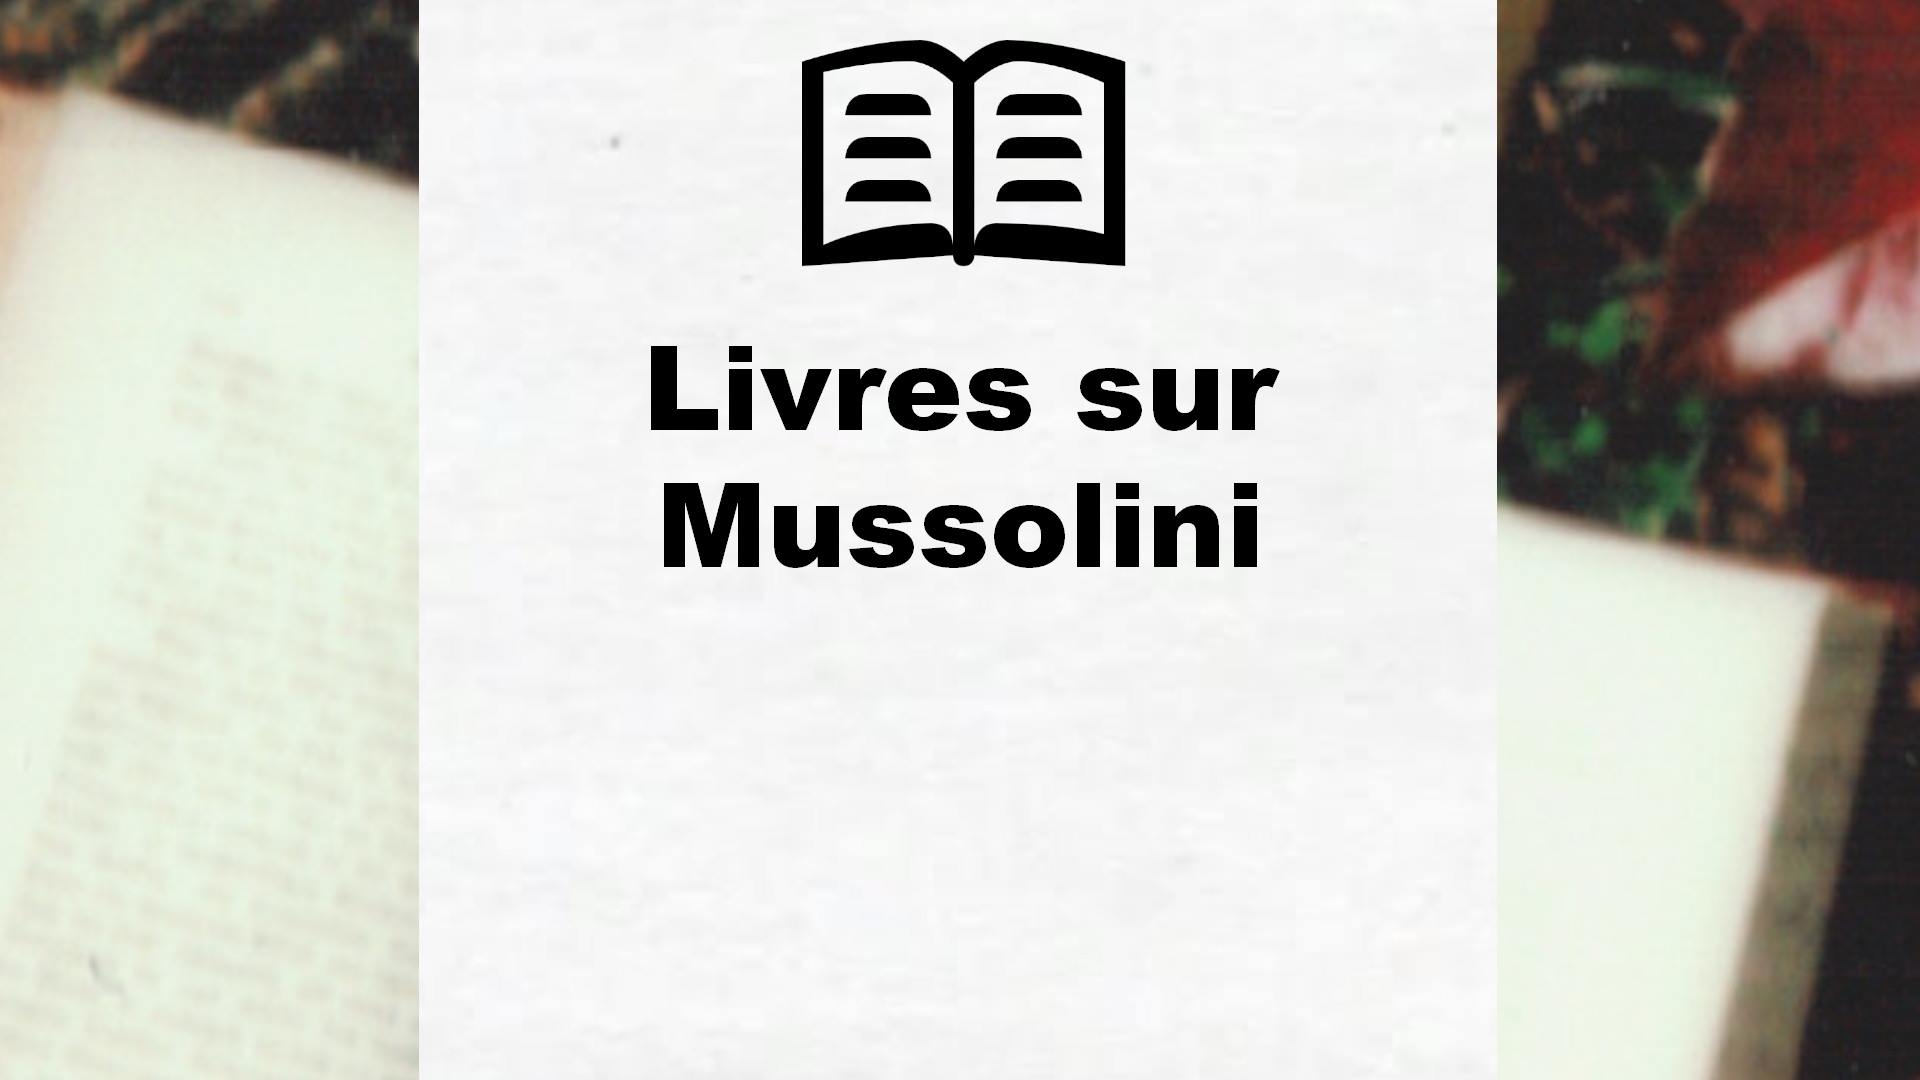 Livres sur Mussolini